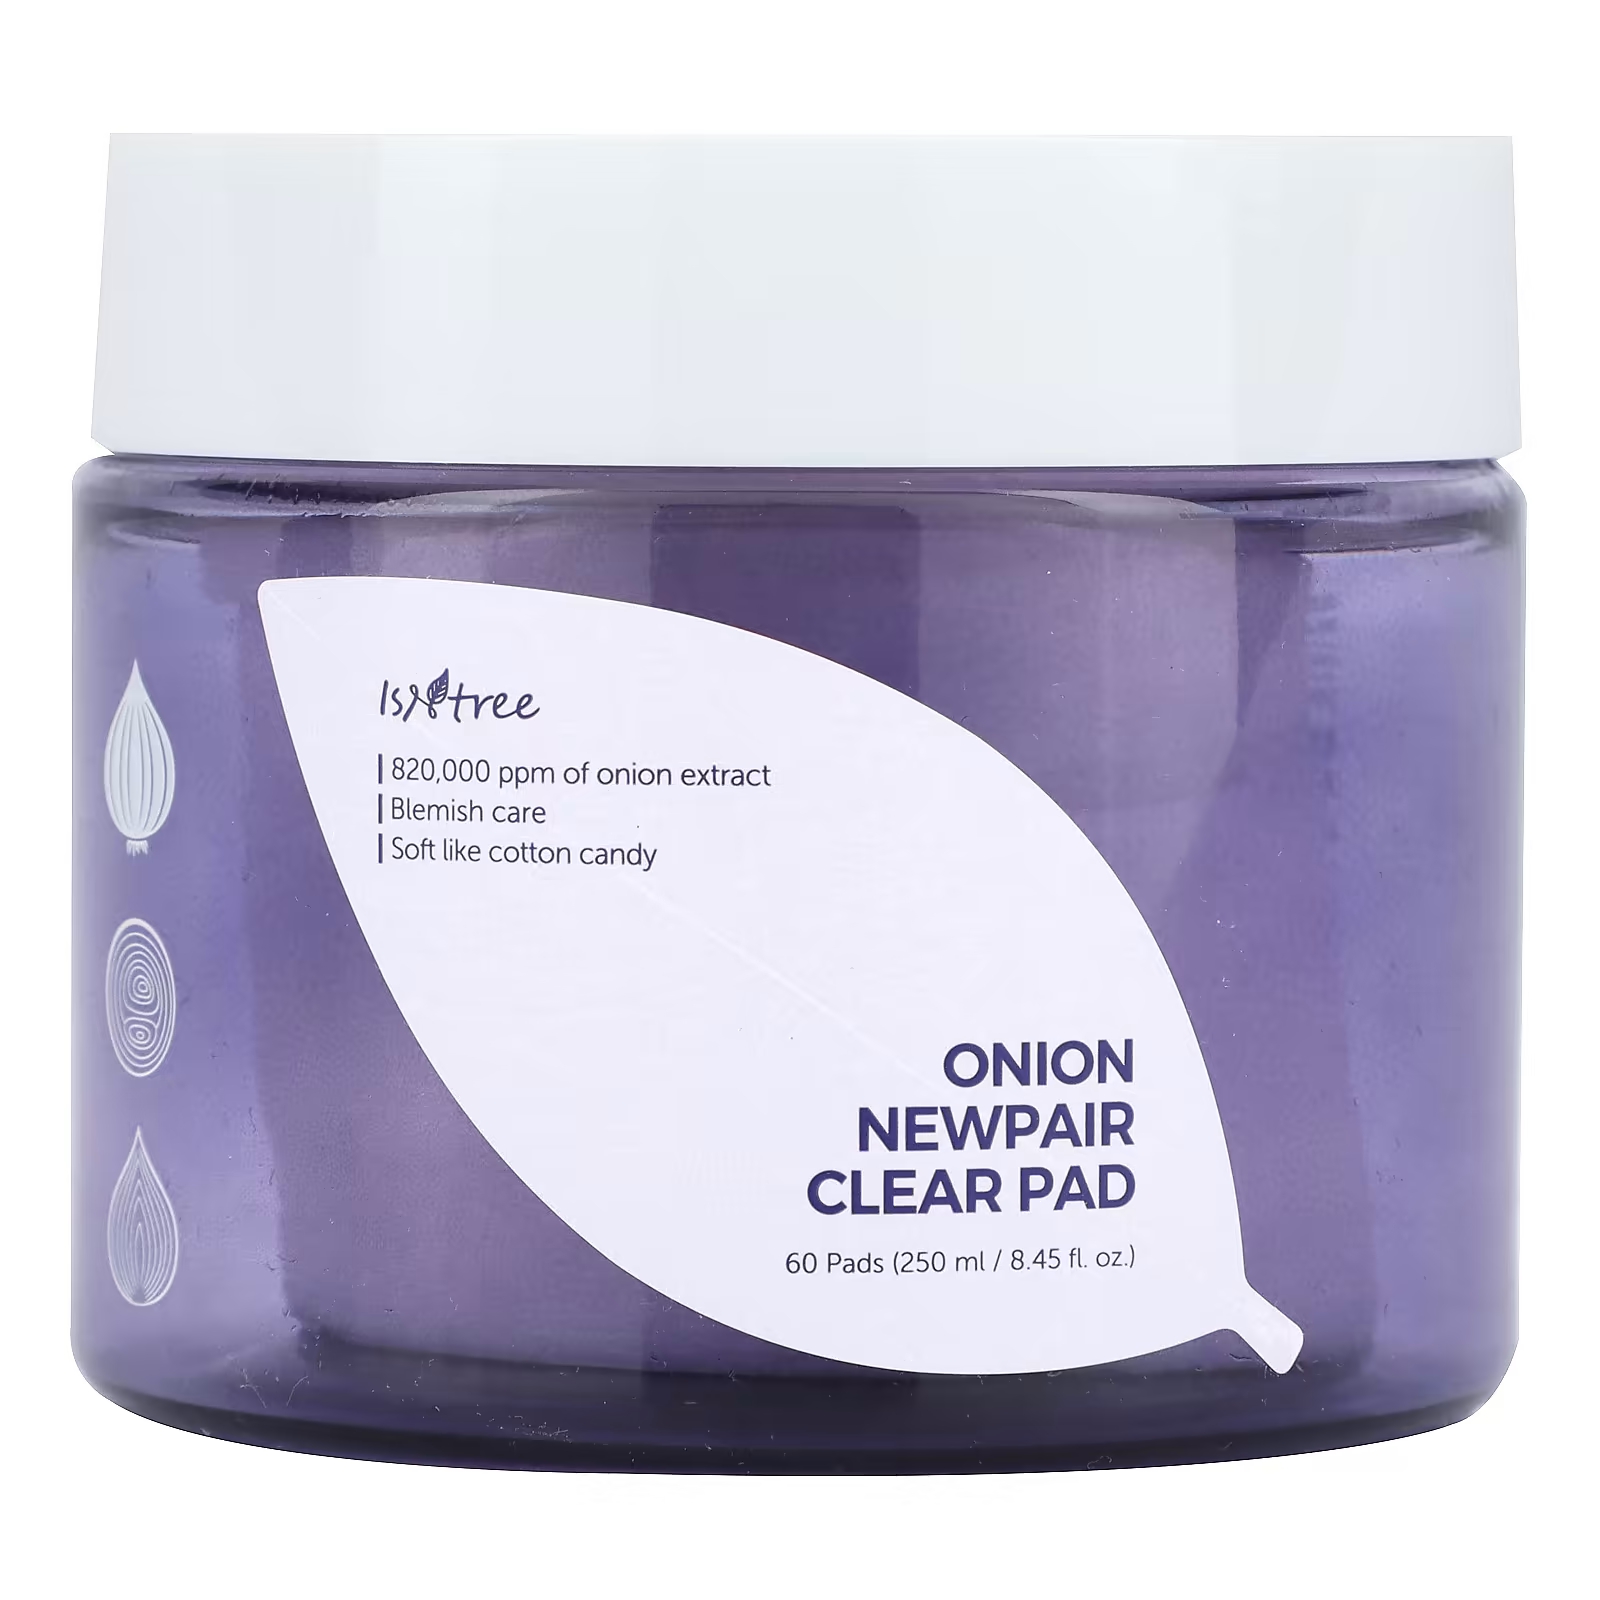 Пэды ISNtree Onion Newpair Clear Pad, 60 штук гель крем для лица 50 мл isntree onion newpair inne